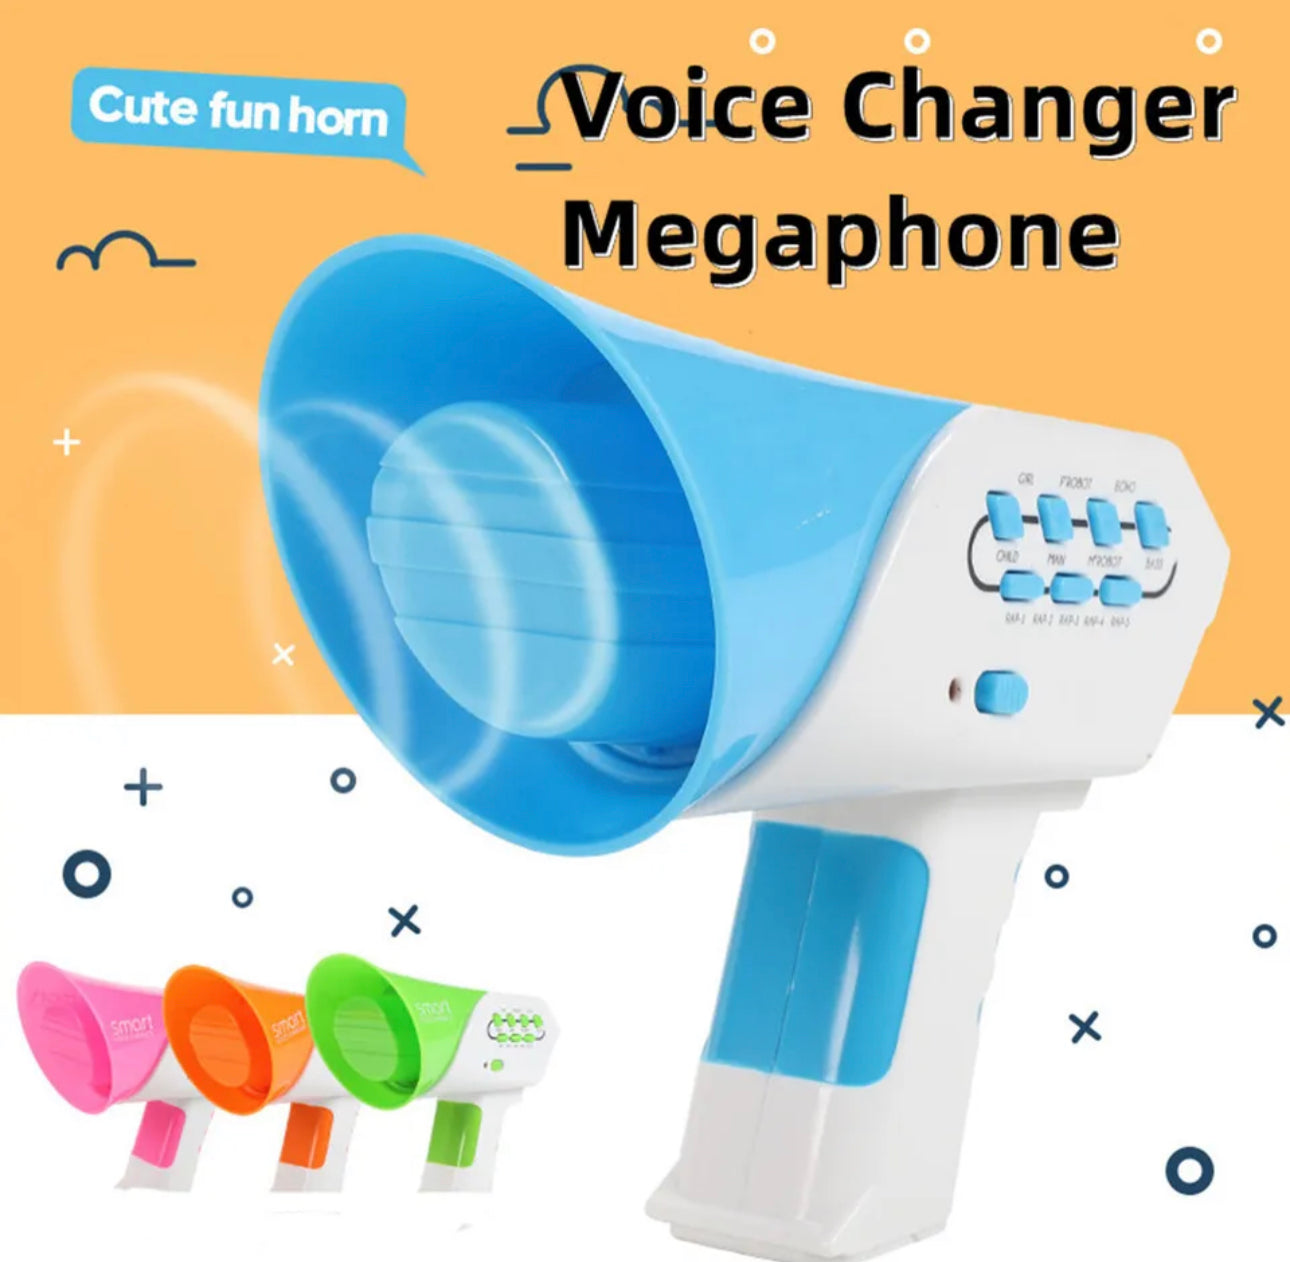 Voice Changer Megaphone